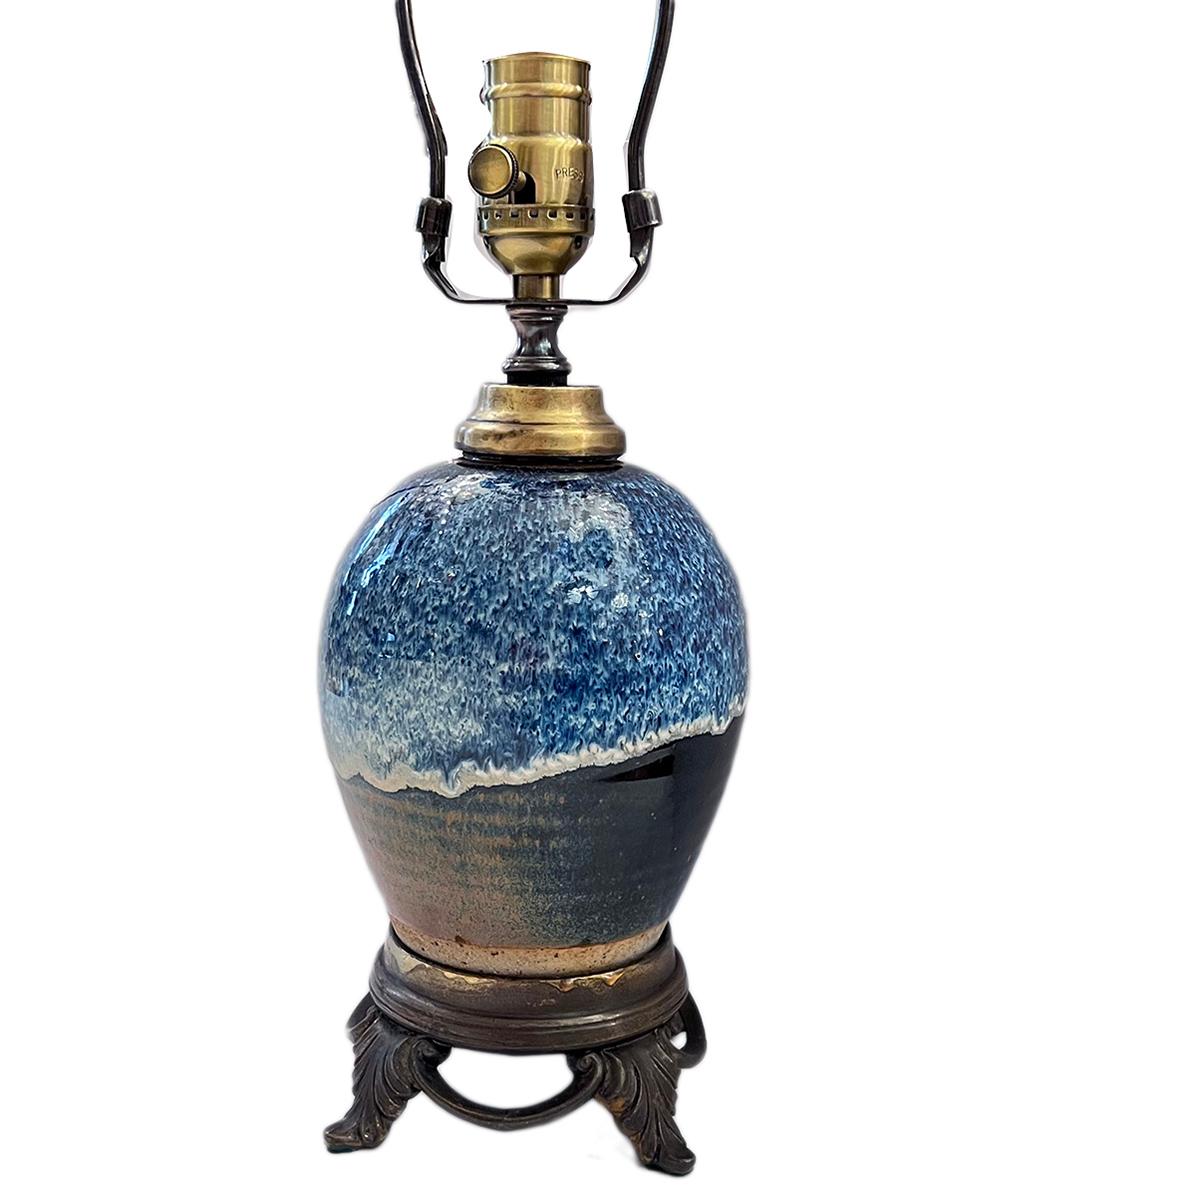 Lampe à huile en porcelaine française des années 1920 convertie à l'électricité.

Mesures :
Hauteur du corps : 9.5